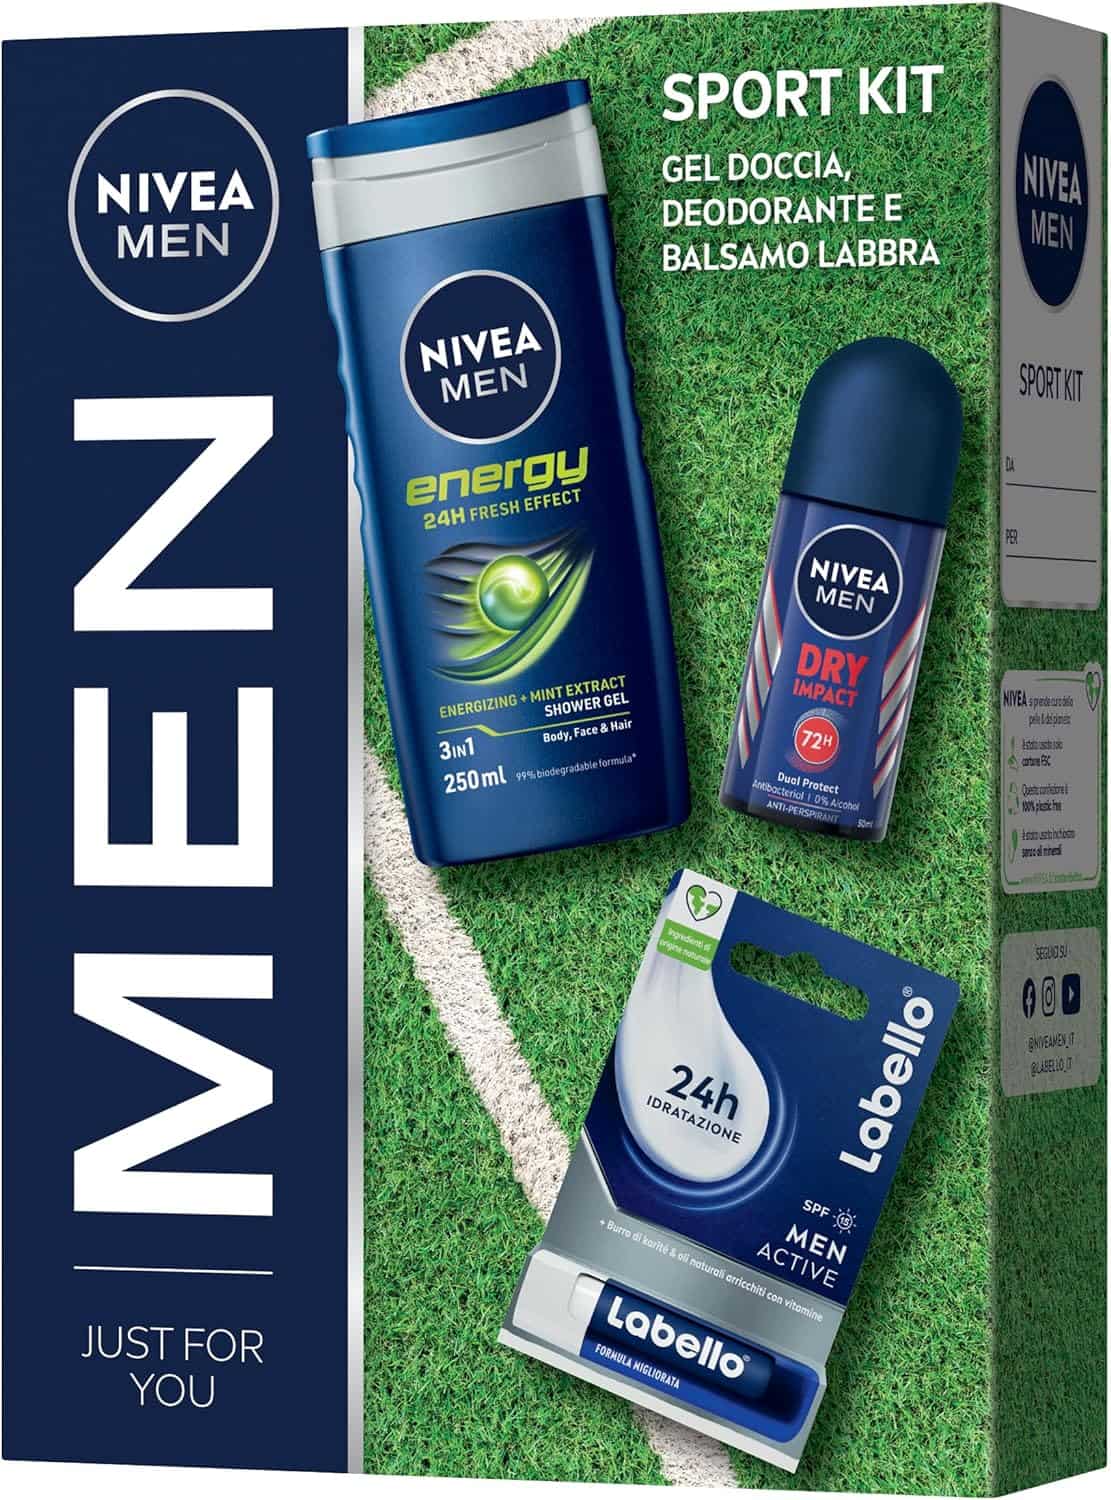 Nivea Man Sport Kit Cofanetto Regalo Uomo Gel Doccia Deodorante e Balsamo Labbra.